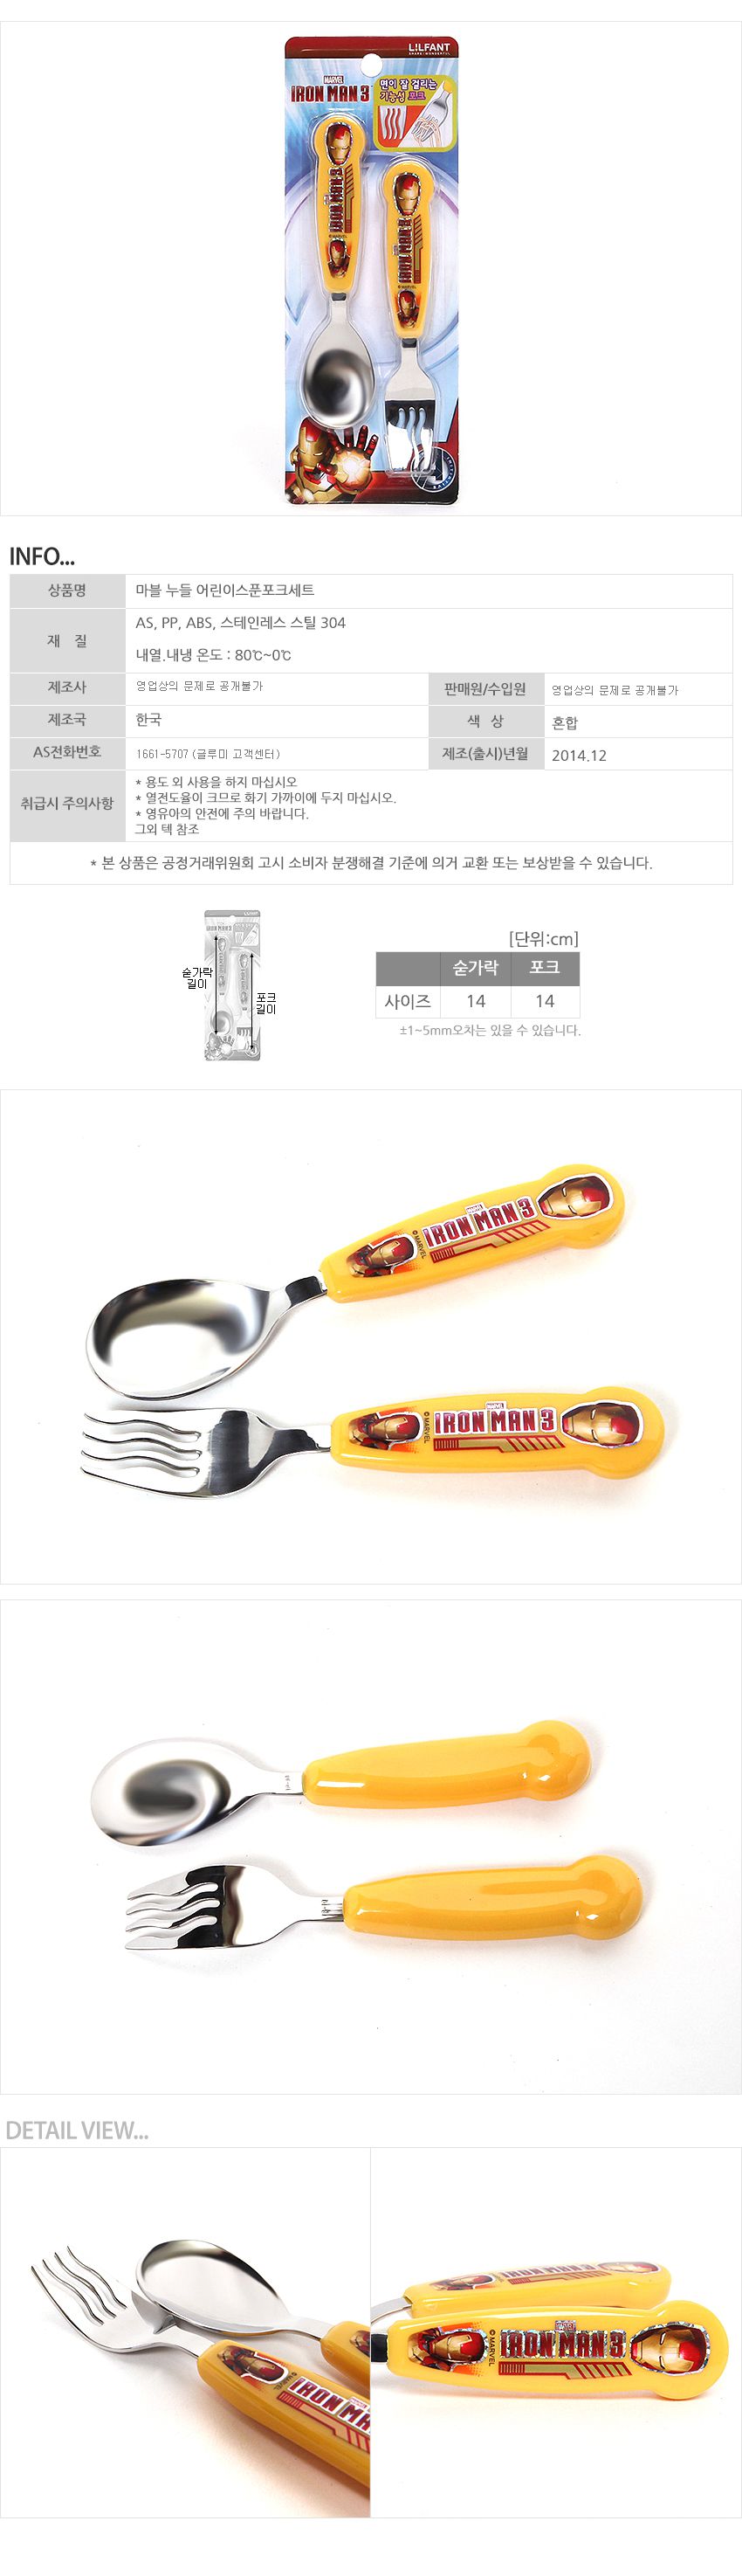 韓國製鋼鐵人兒童304不銹鋼餐具組-湯匙+波浪叉子